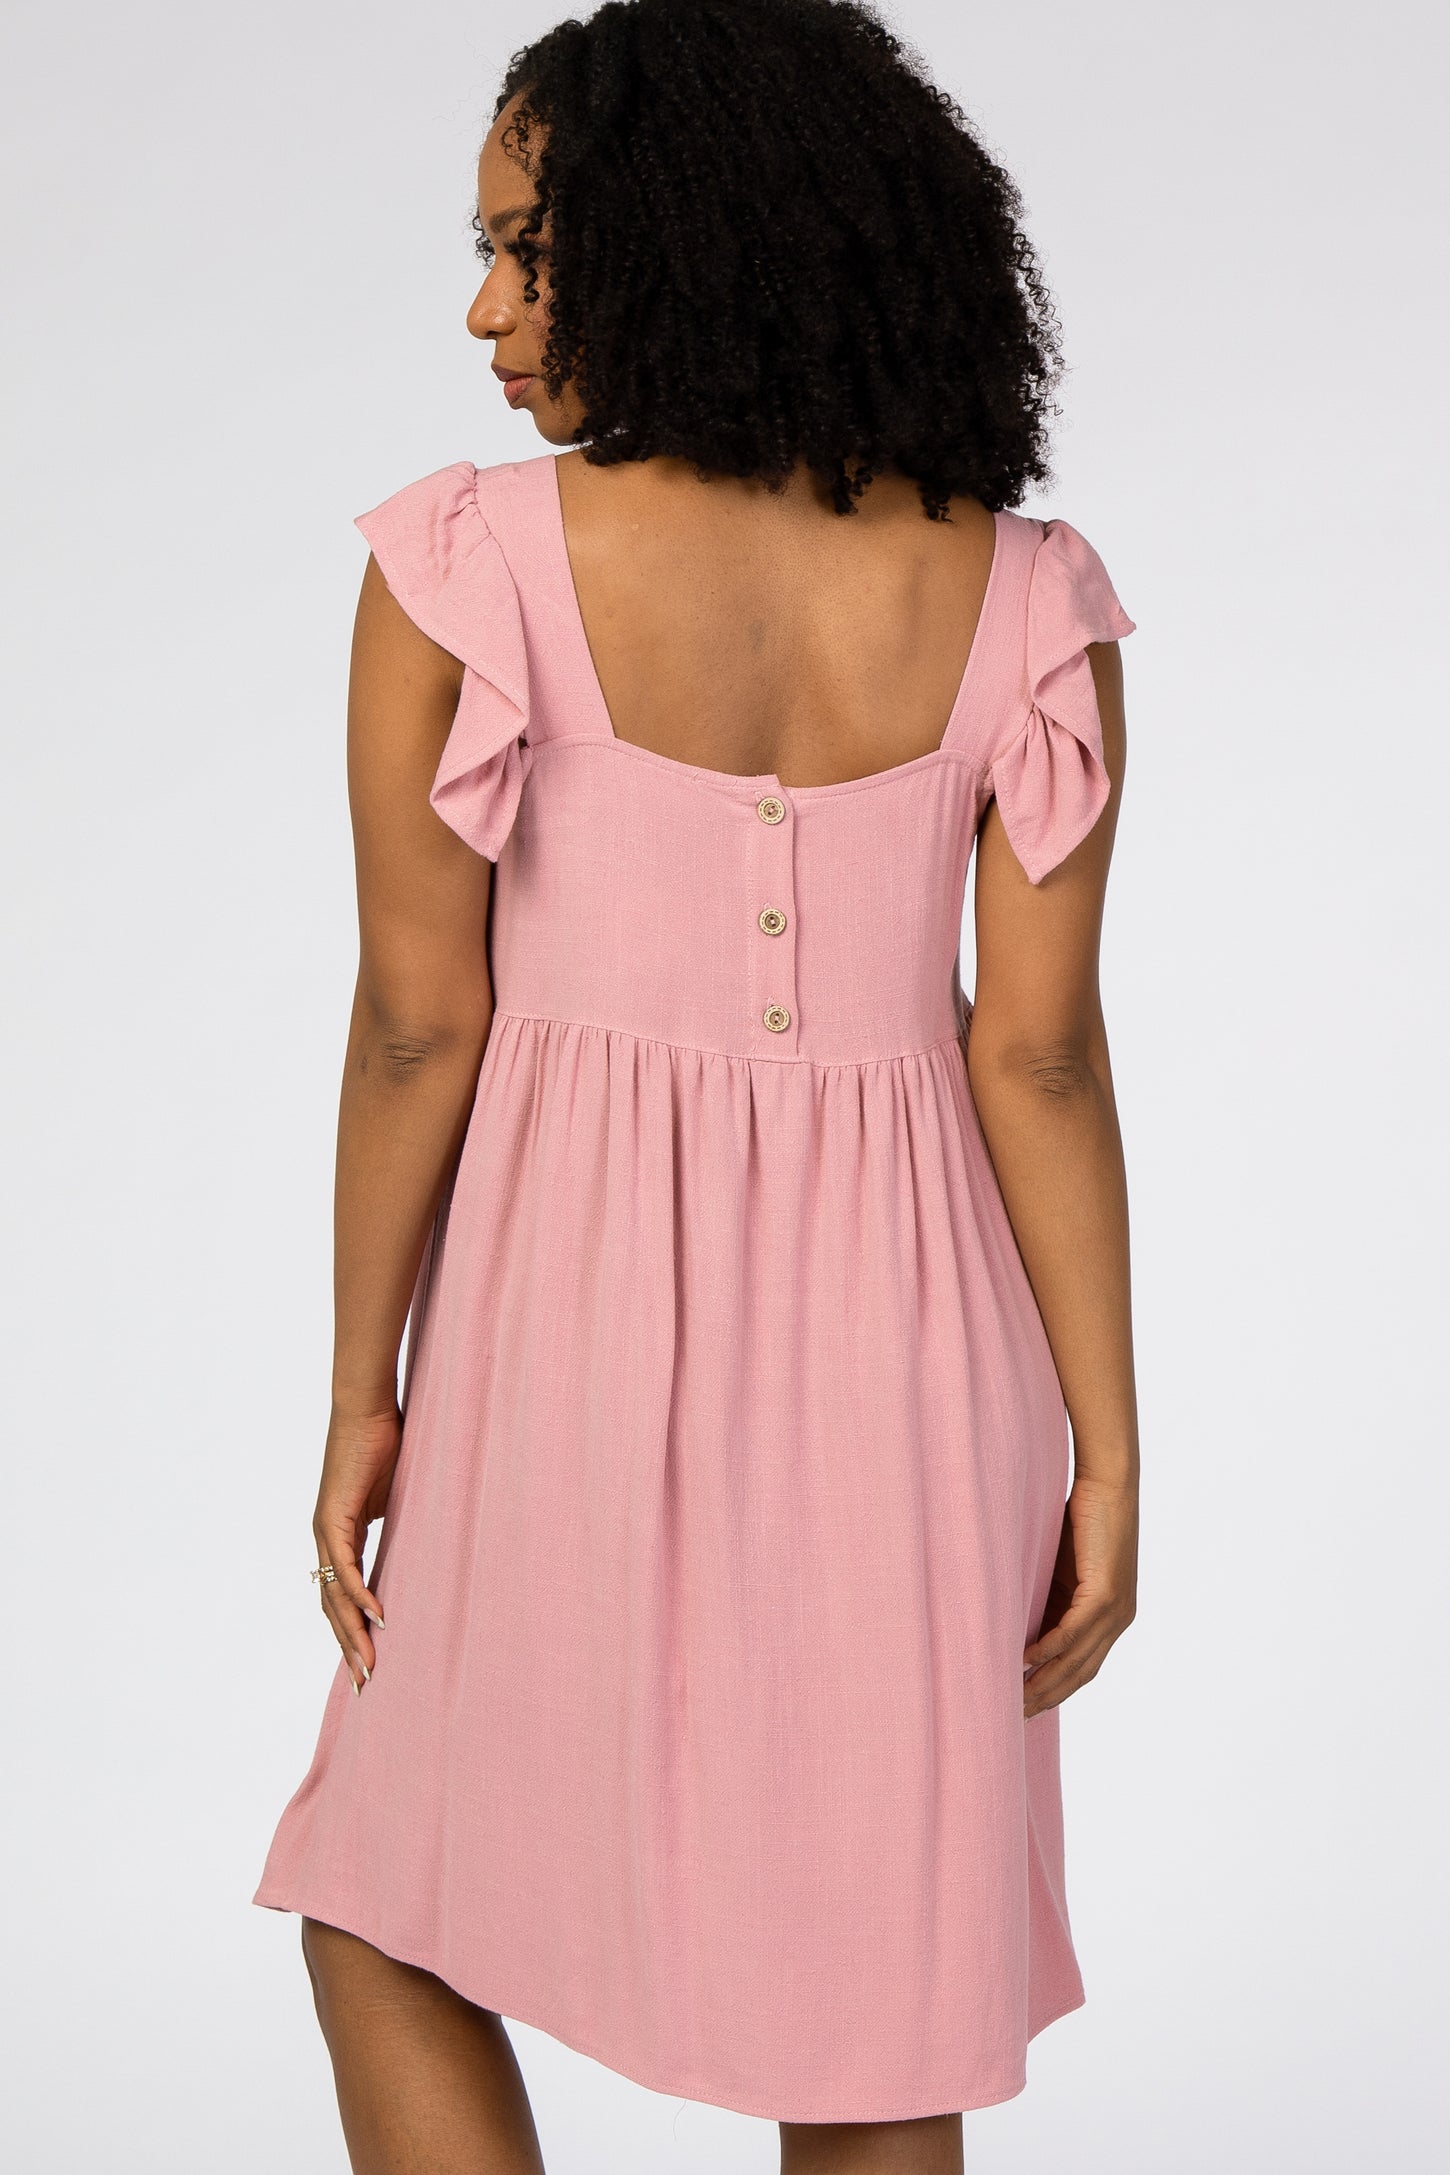 Pink Flutter Sleeve Dress